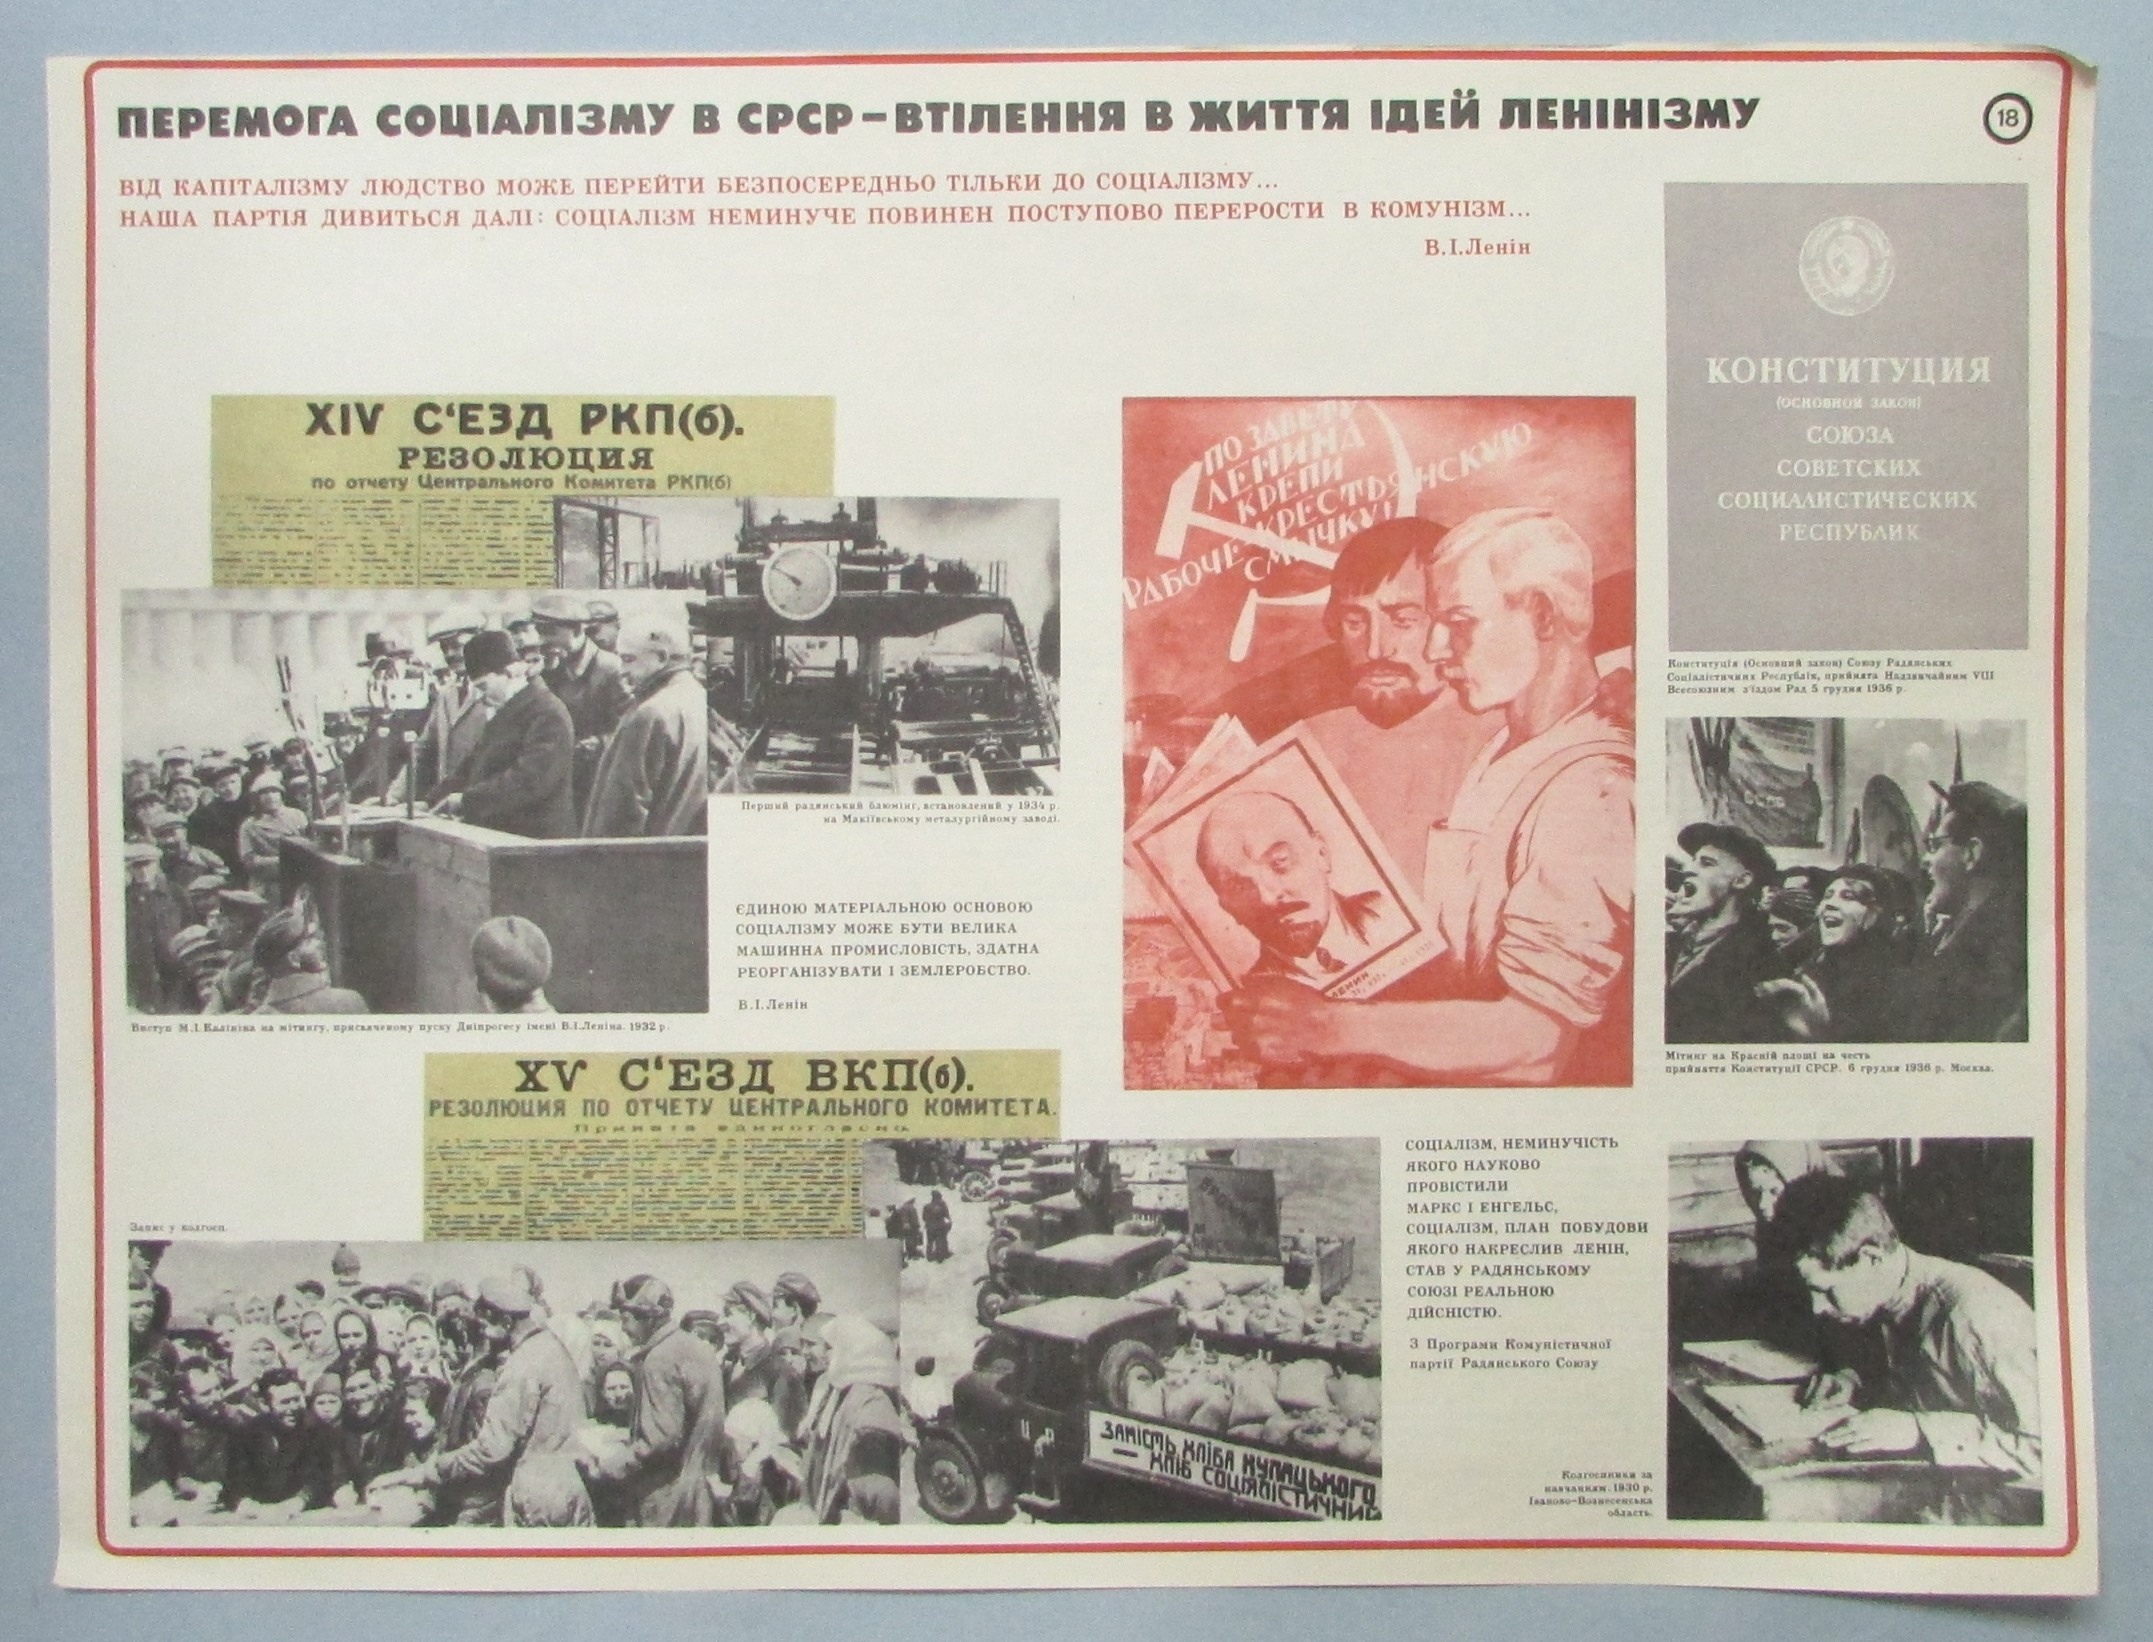 Плакат "В. І. Ленін. Перемога соціалізму в СРСР - втілення в життя ідей ленінізму. Наочний посібник з 24 таблиць"	